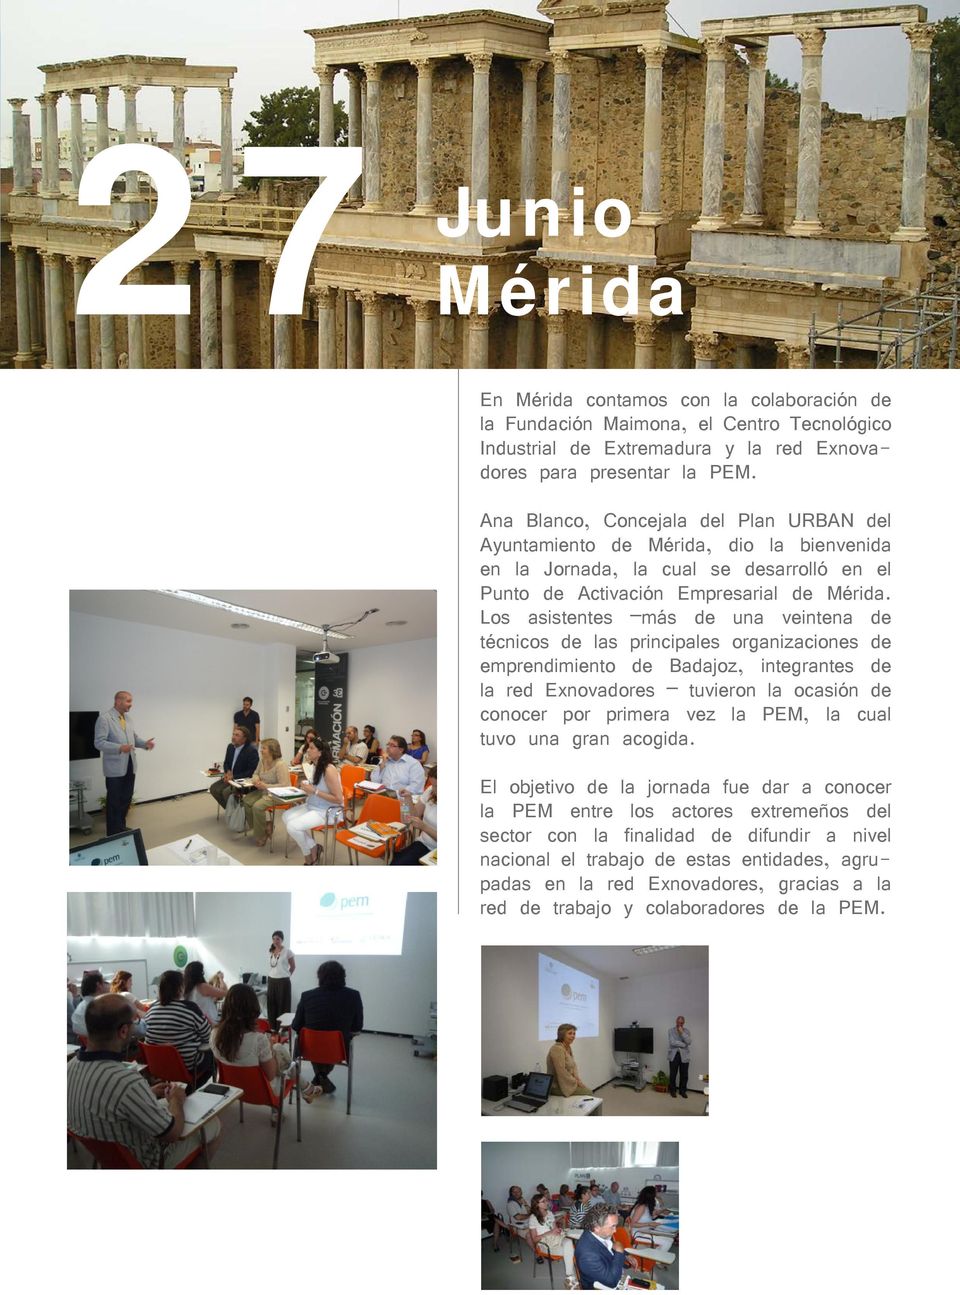 Los asistentes más de una veintena de técnicos de las principales organizaciones de emprendimiento de Badajoz, integrantes de la red Exnovadores tuvieron la ocasión de conocer por primera vez la PEM,